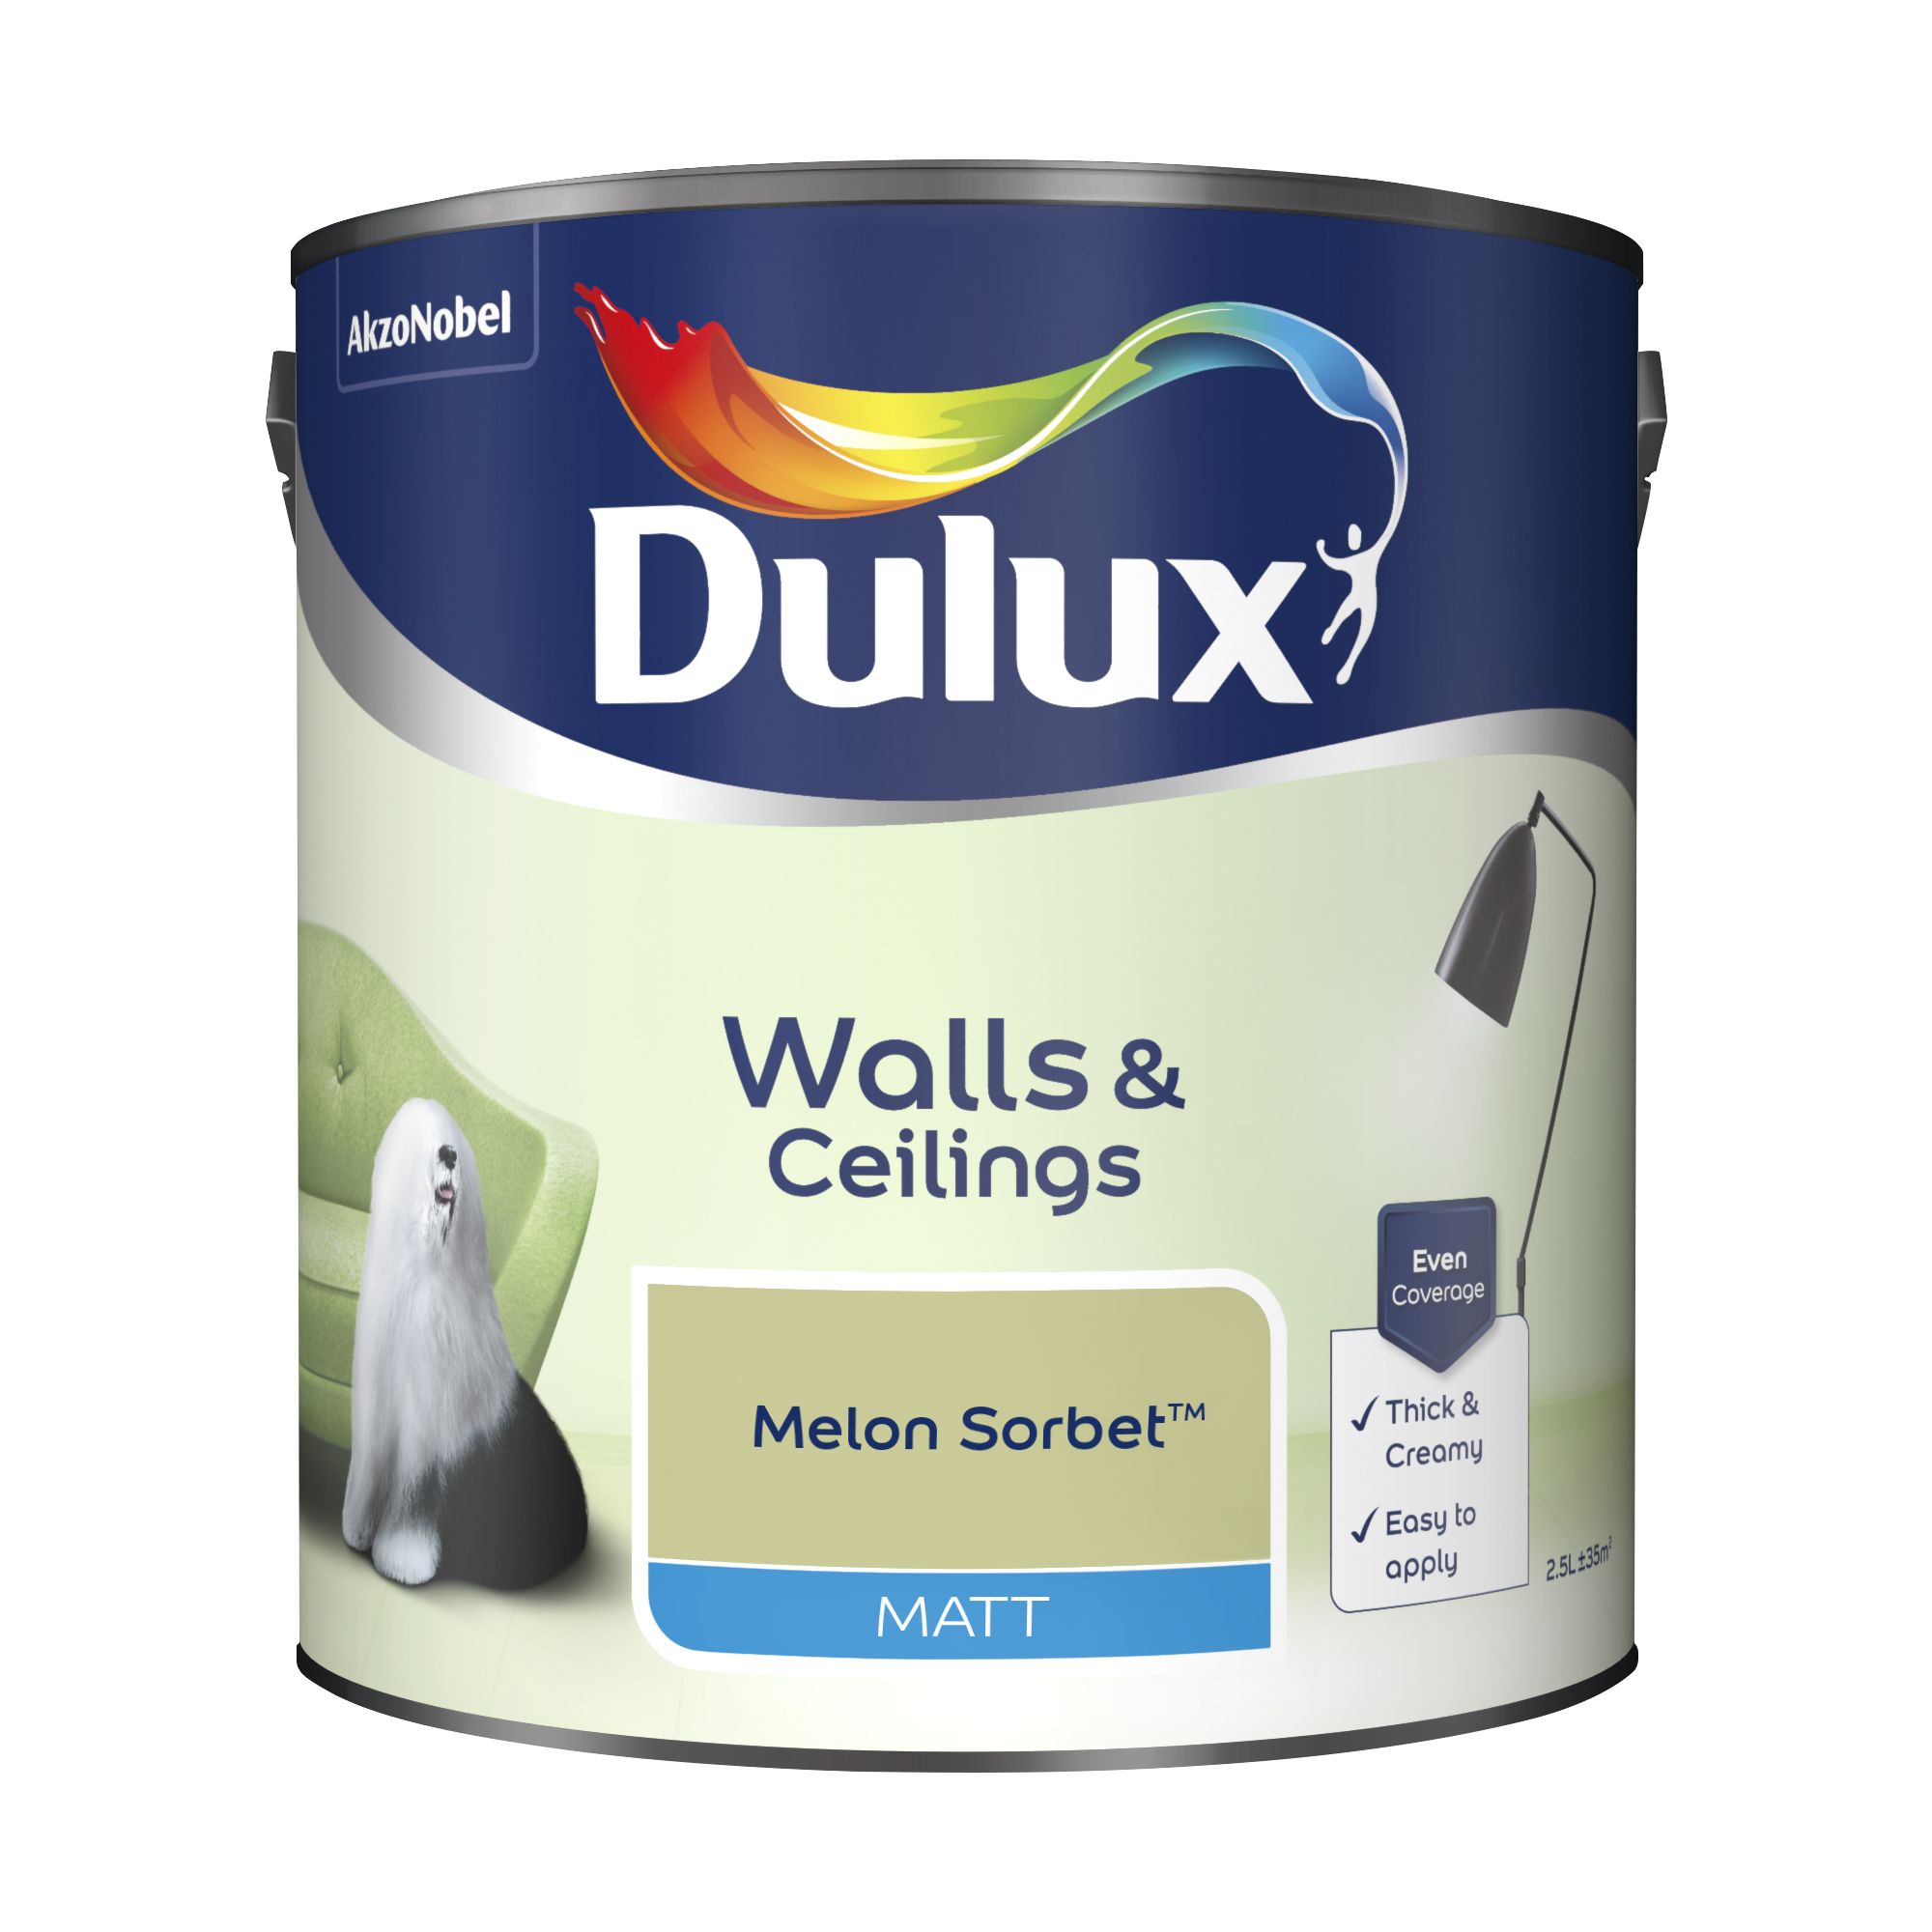 Dulux Walls & ceilings Melon sorbet Matt Emulsion paint, 2.5L